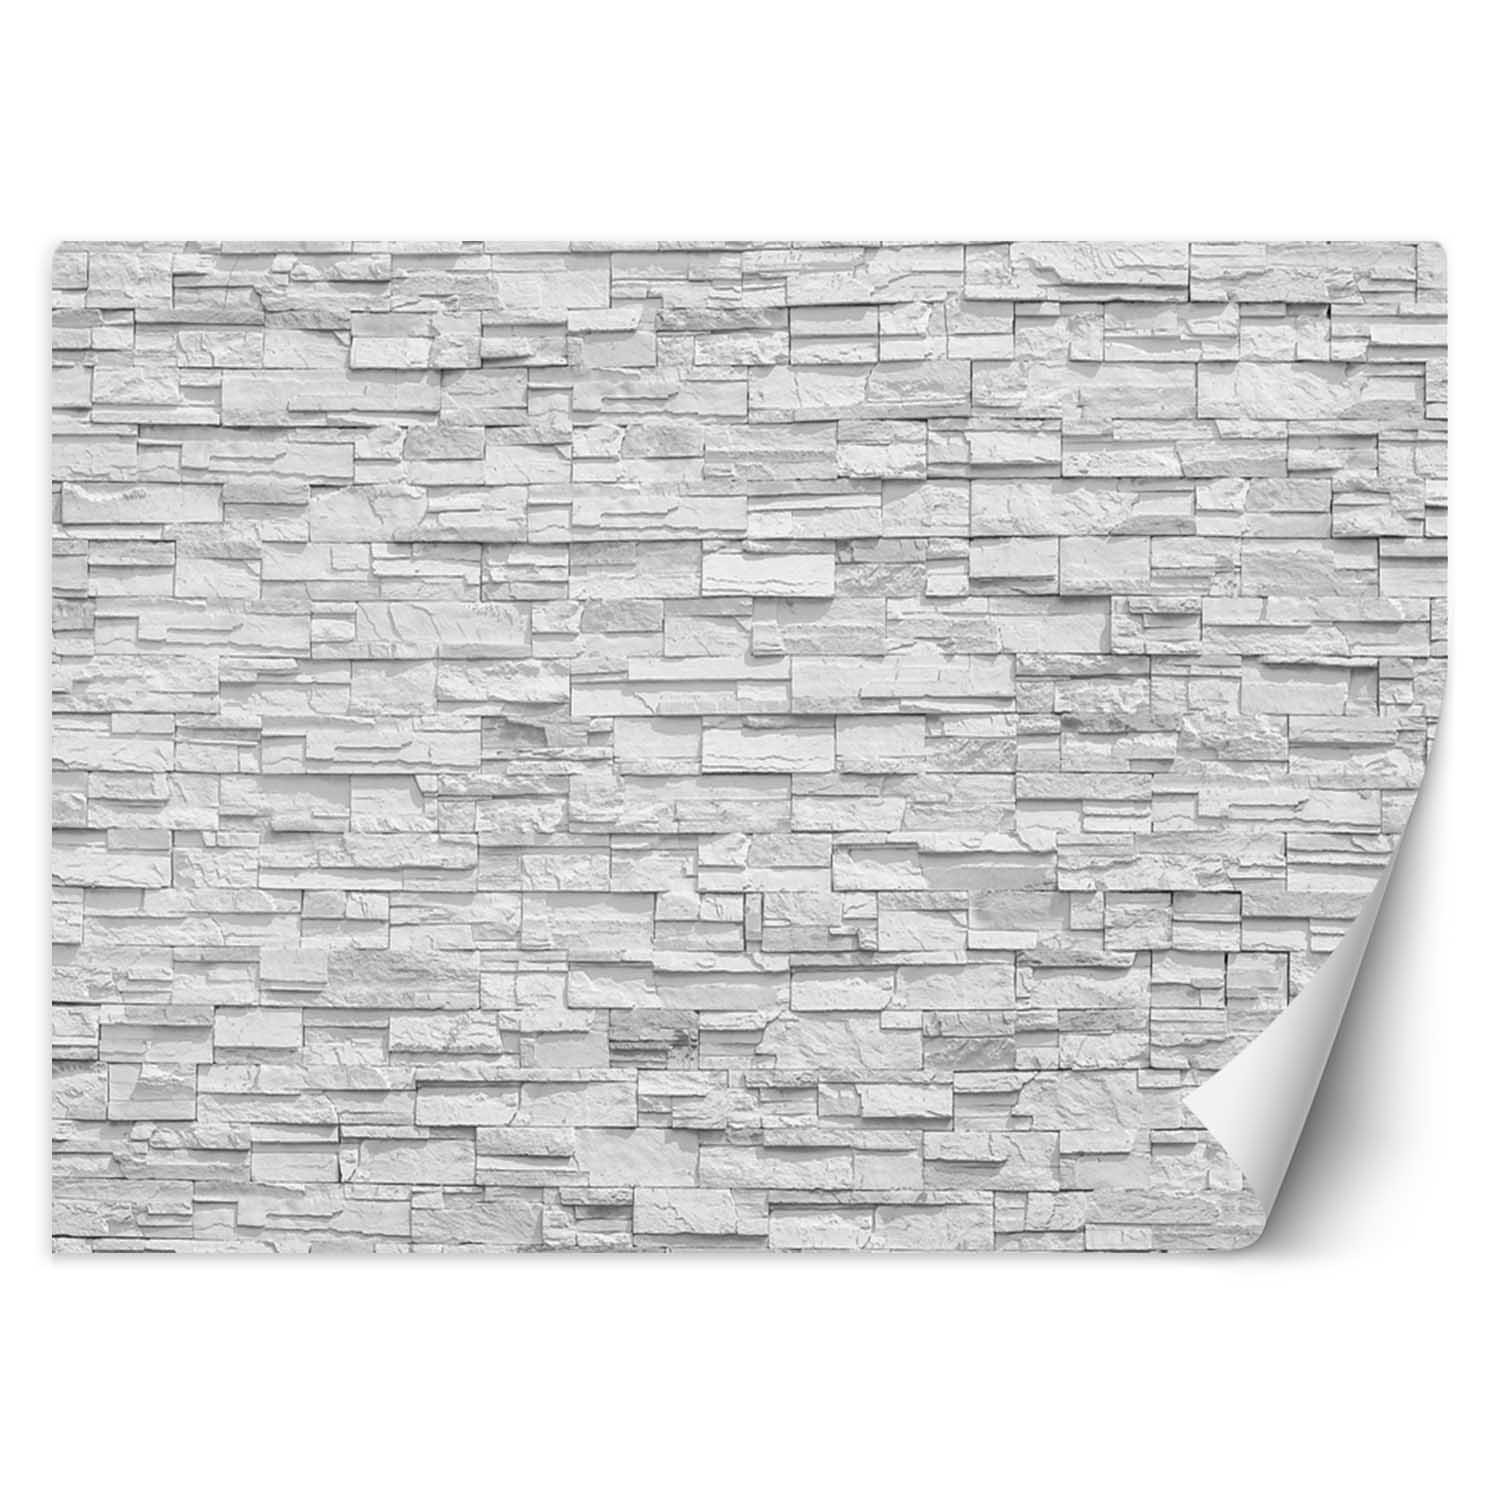 Trend24 – Behang – Witte Stenen Muur – Behangpapier – Behang Woonkamer – Fotobehang – 250x175x2 cm – Incl. behanglijm